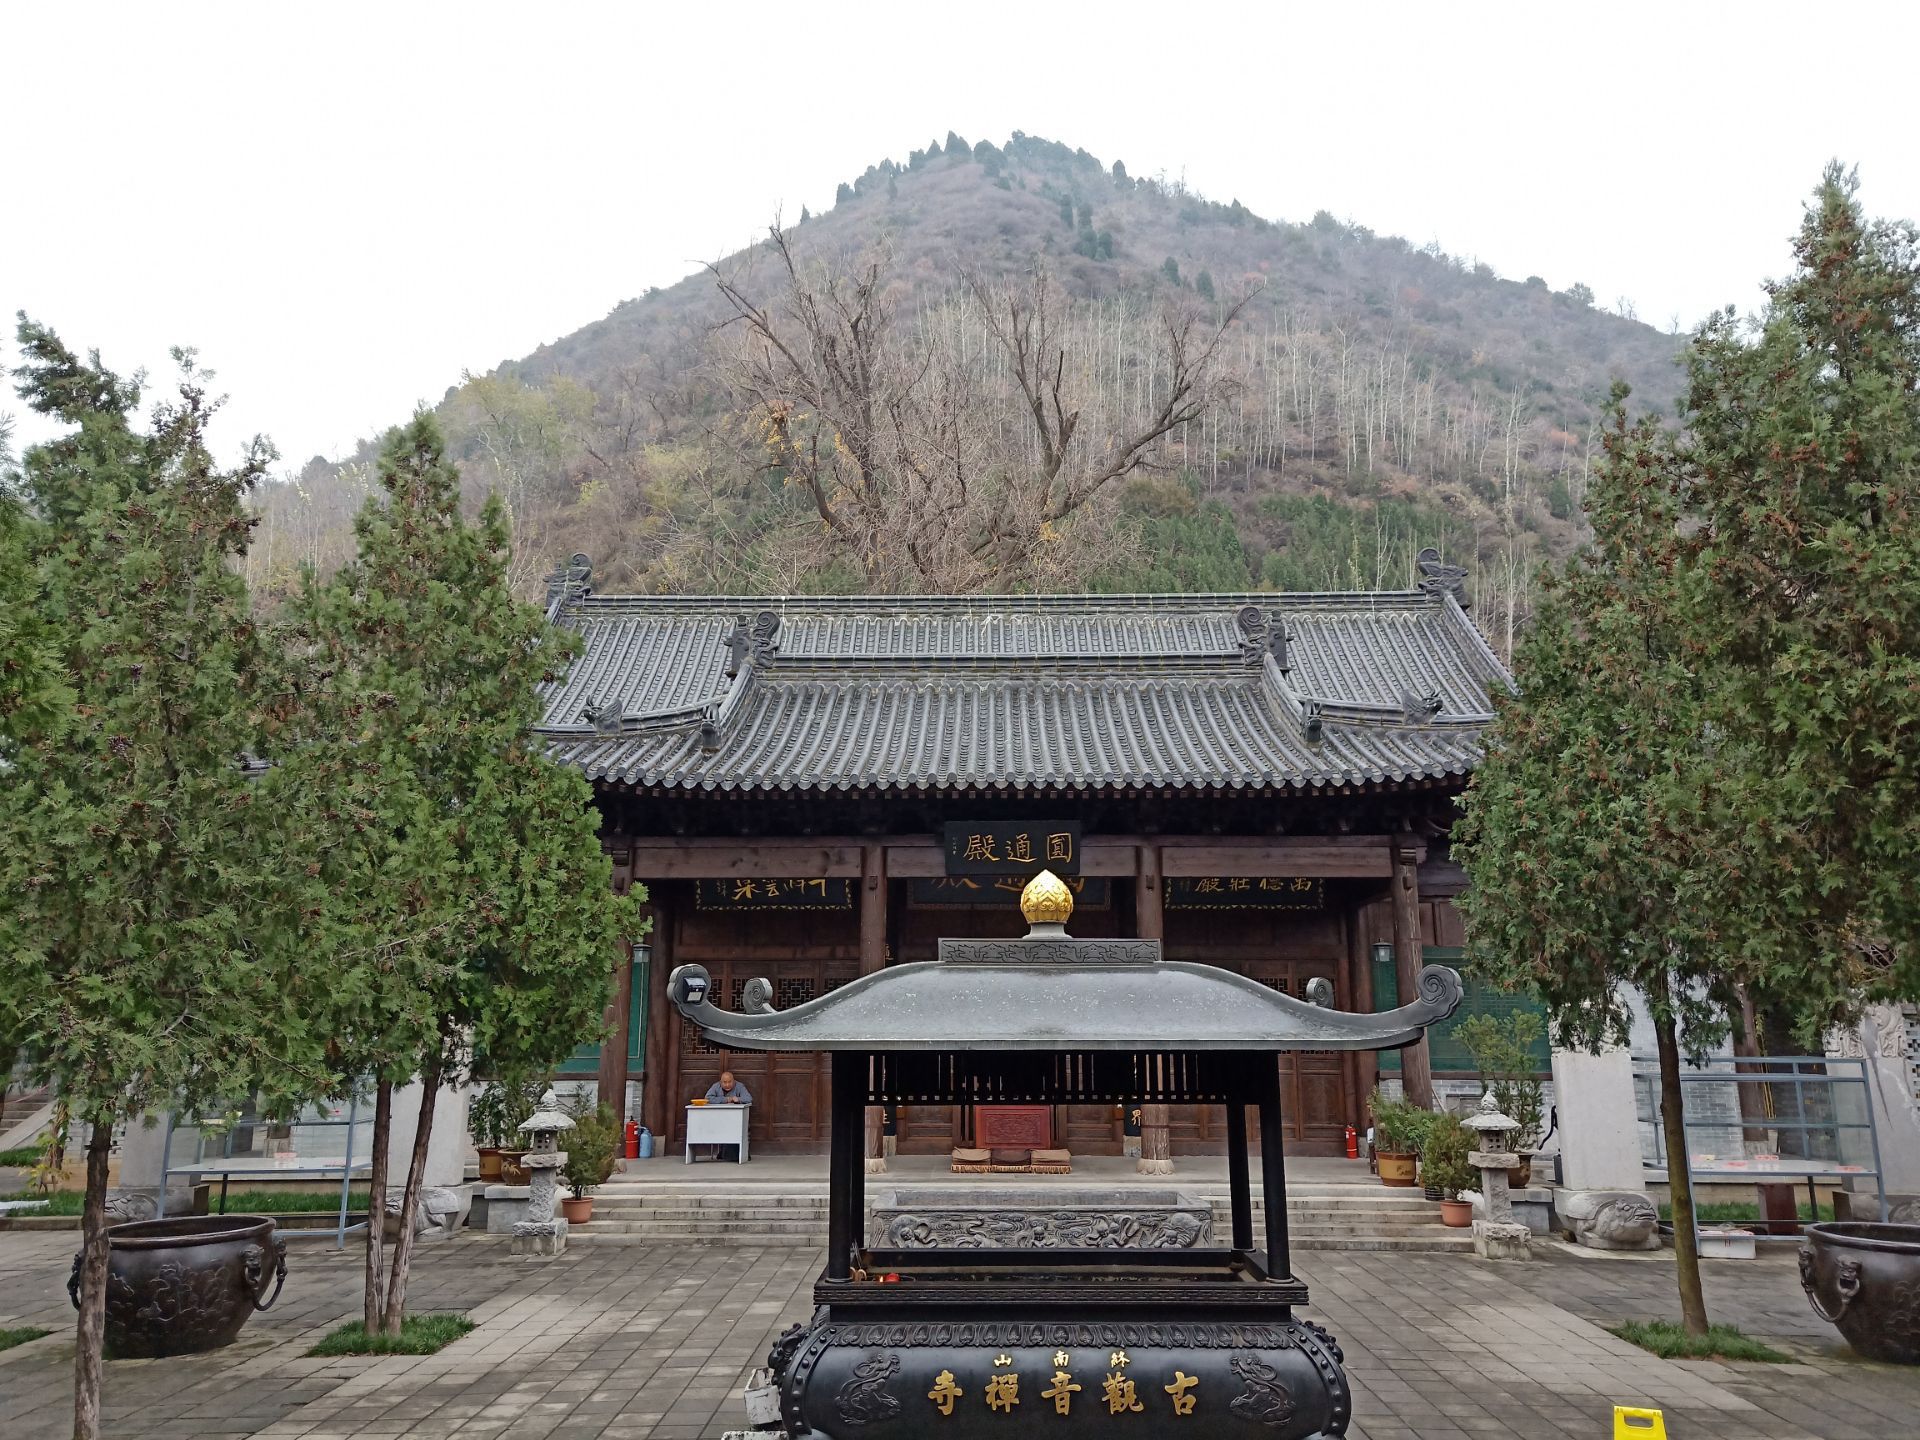 无锡南禅寺，南朝四百八十寺仅存的的寺院